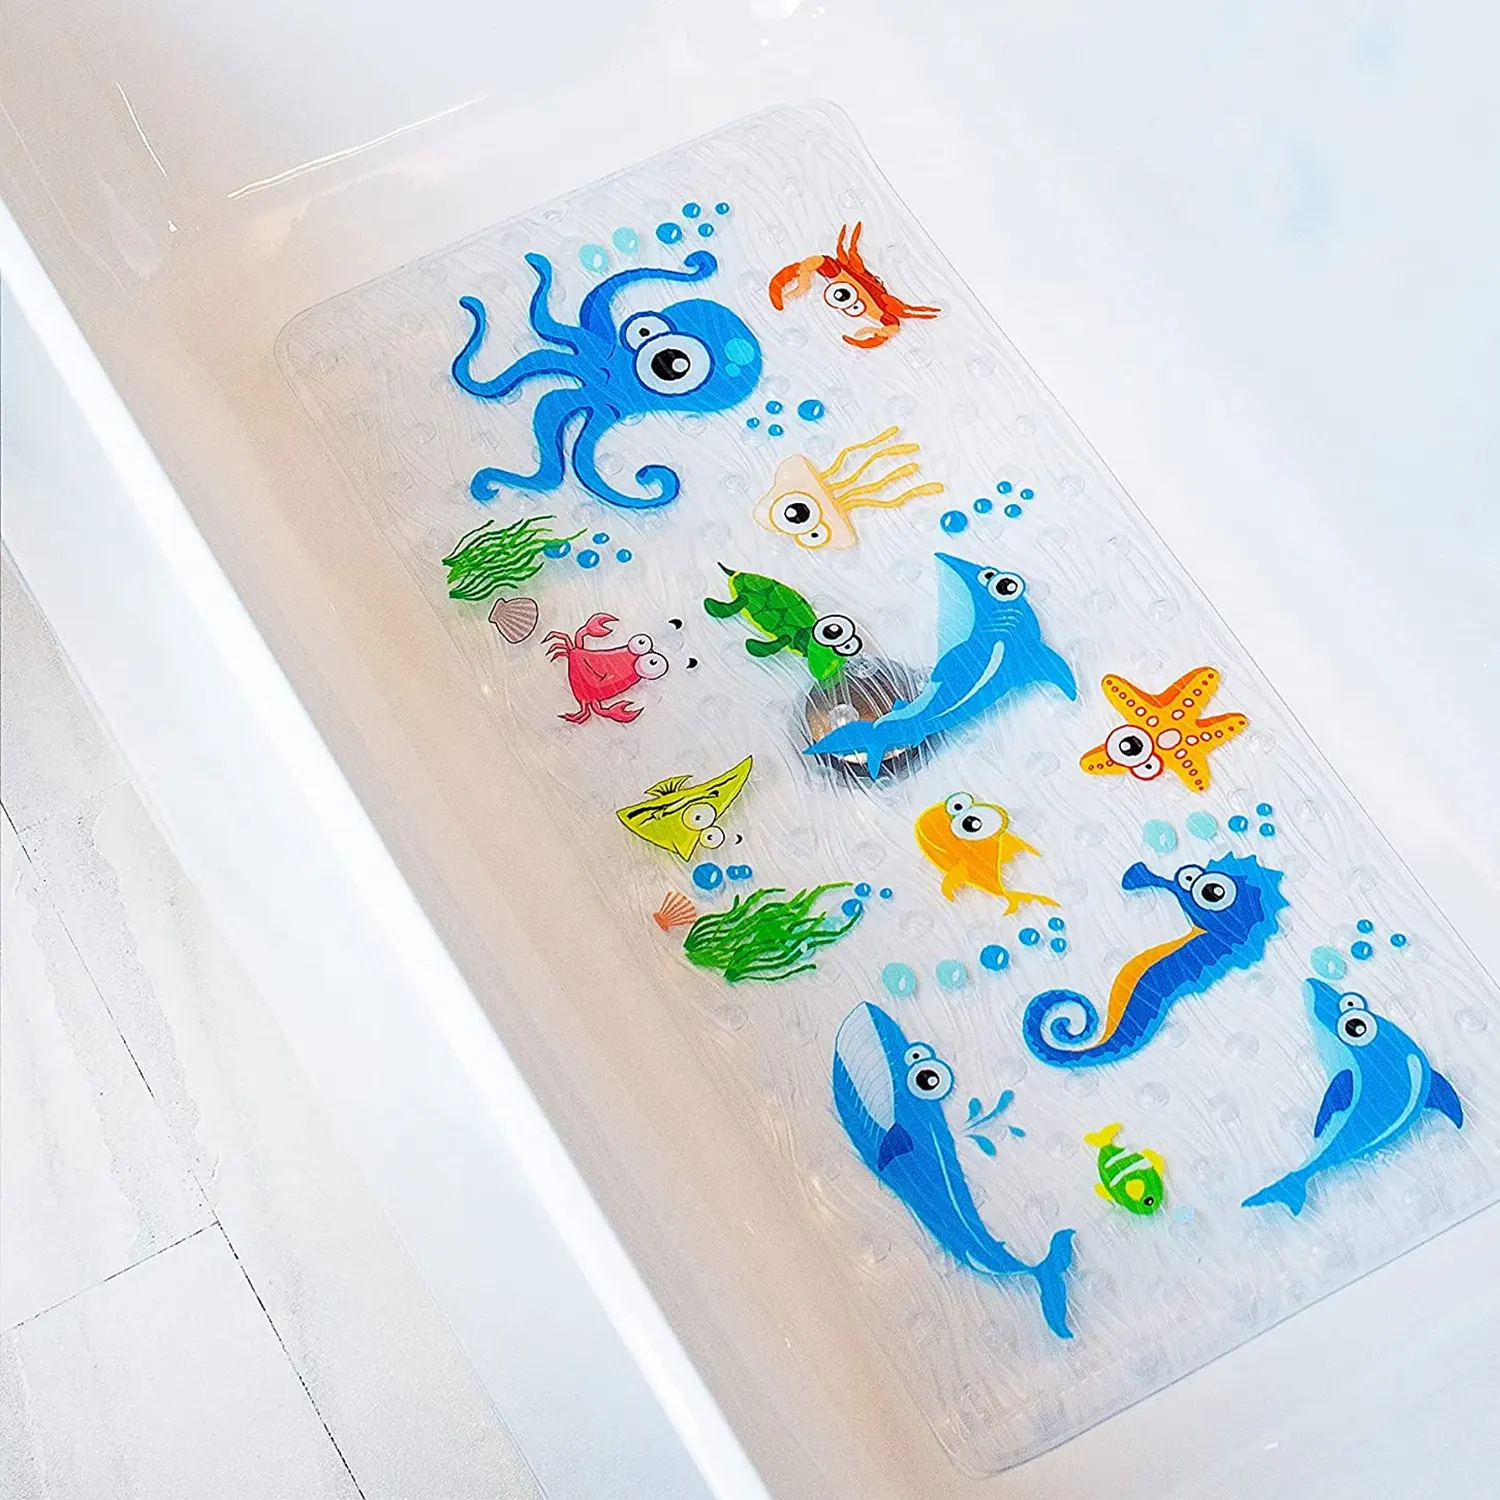 חם Badematte Custom ילדי החלקה אמבטיה אמבטיה מחצלת אנטי החלקה רחצה יניקה מקלחת מחצלת עם ווים לילדים ילדים תינוק